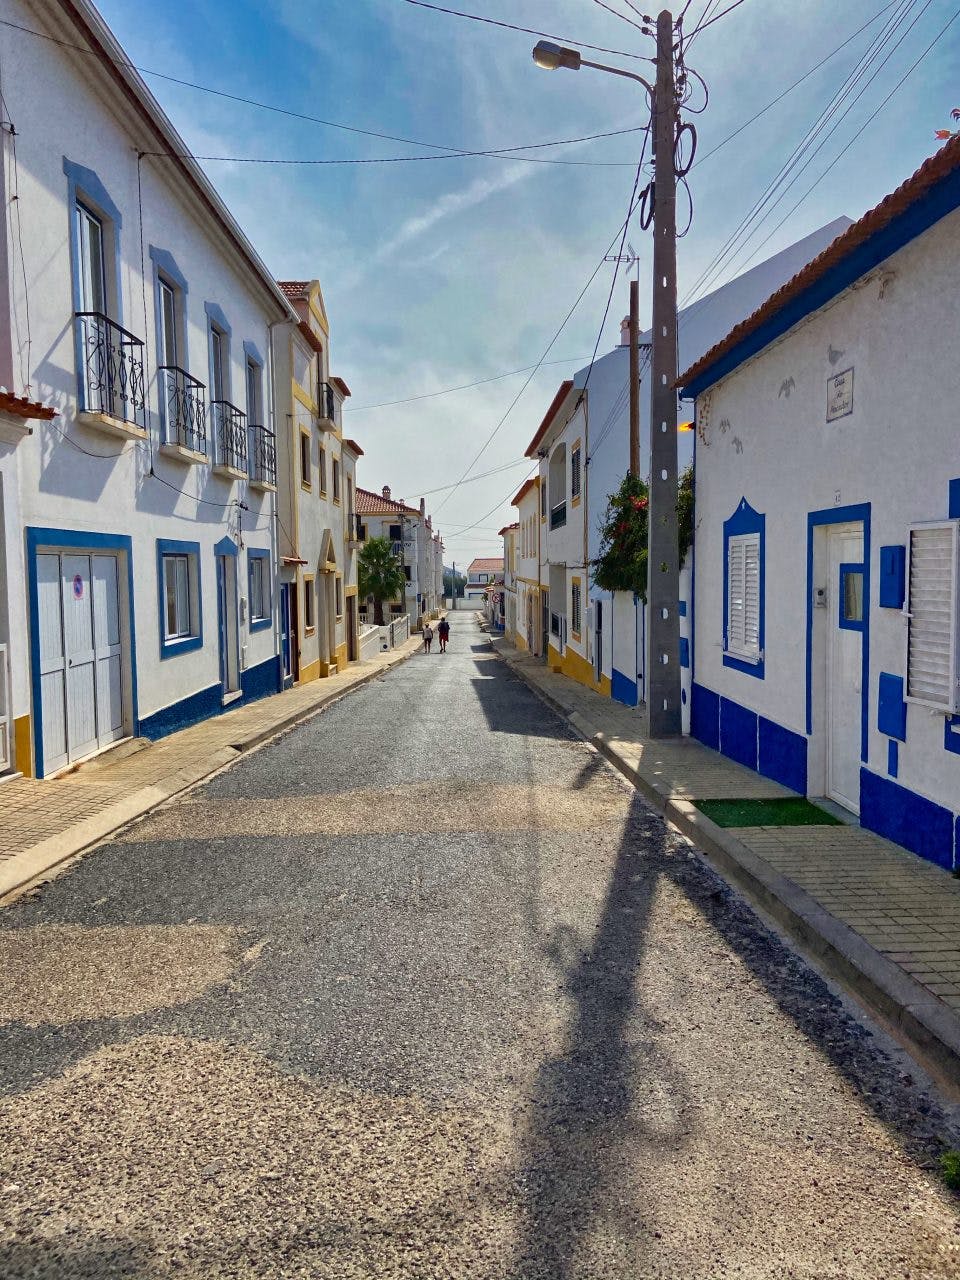 A street in Vila Nova de Milfontes. 